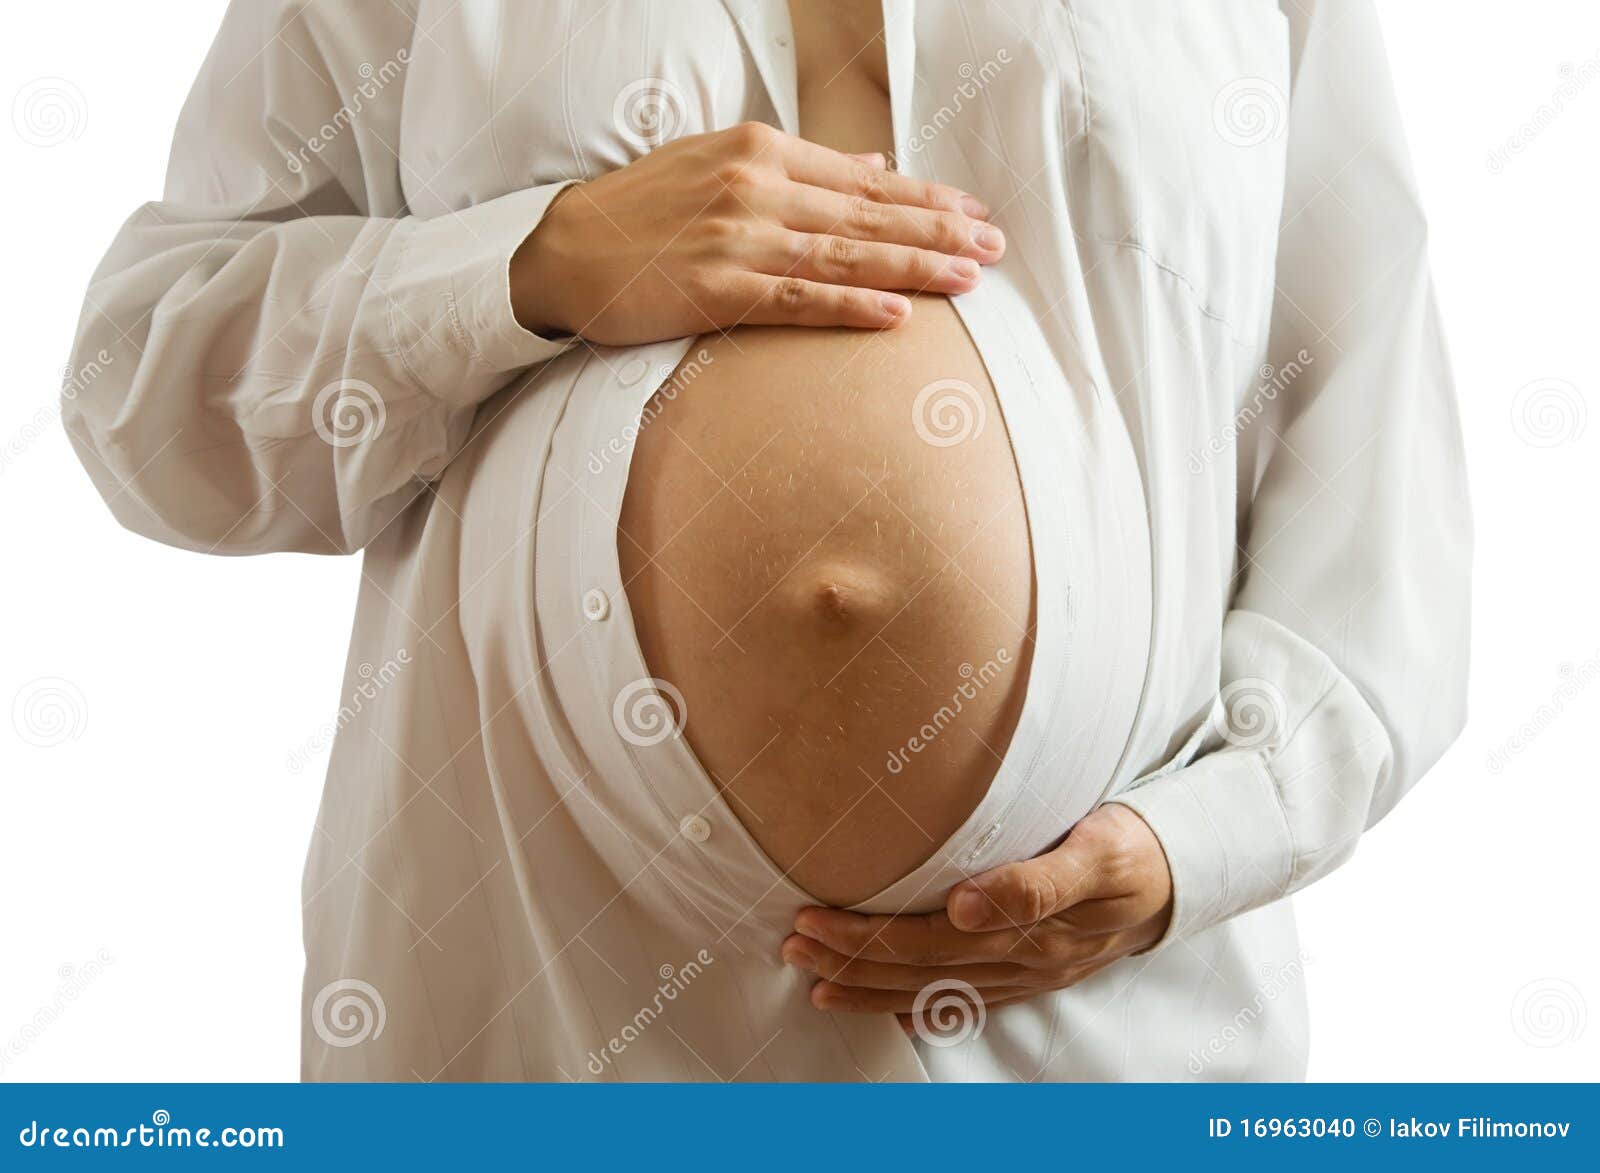 Выделяется из груди при беременности. Живот на 9 месяце.